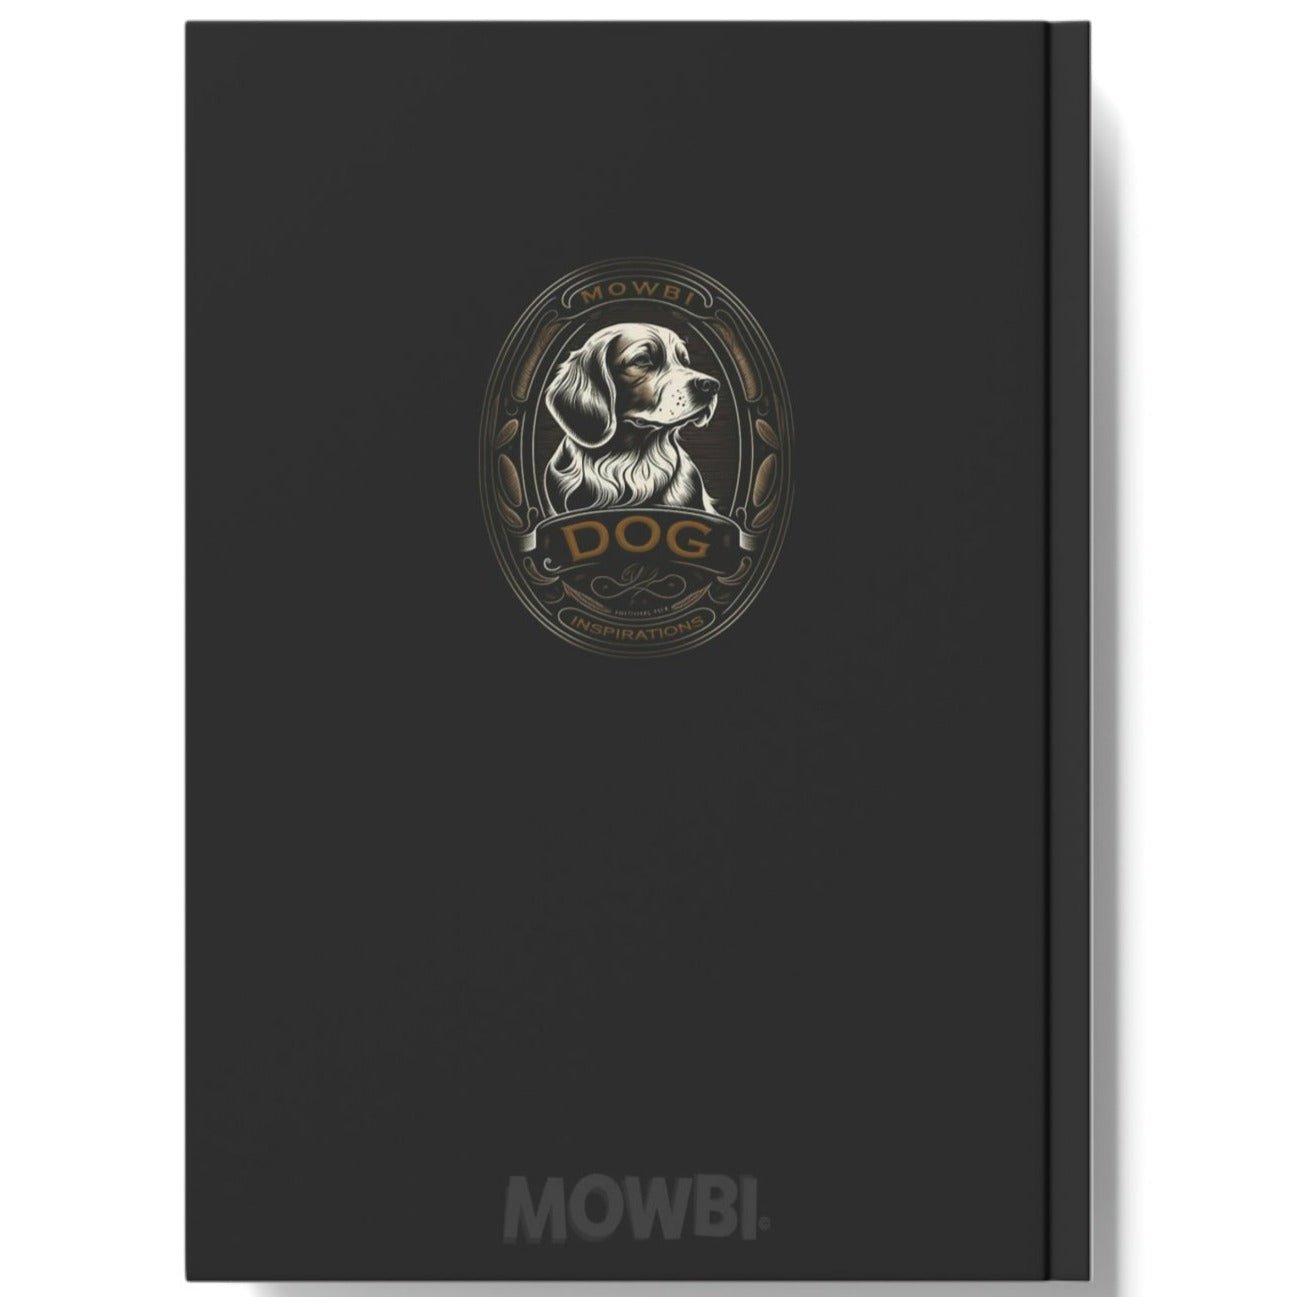 Biewer Terrier Notebook - Emblem - Biewer Terrier Inspirations - Hard Backed Journal